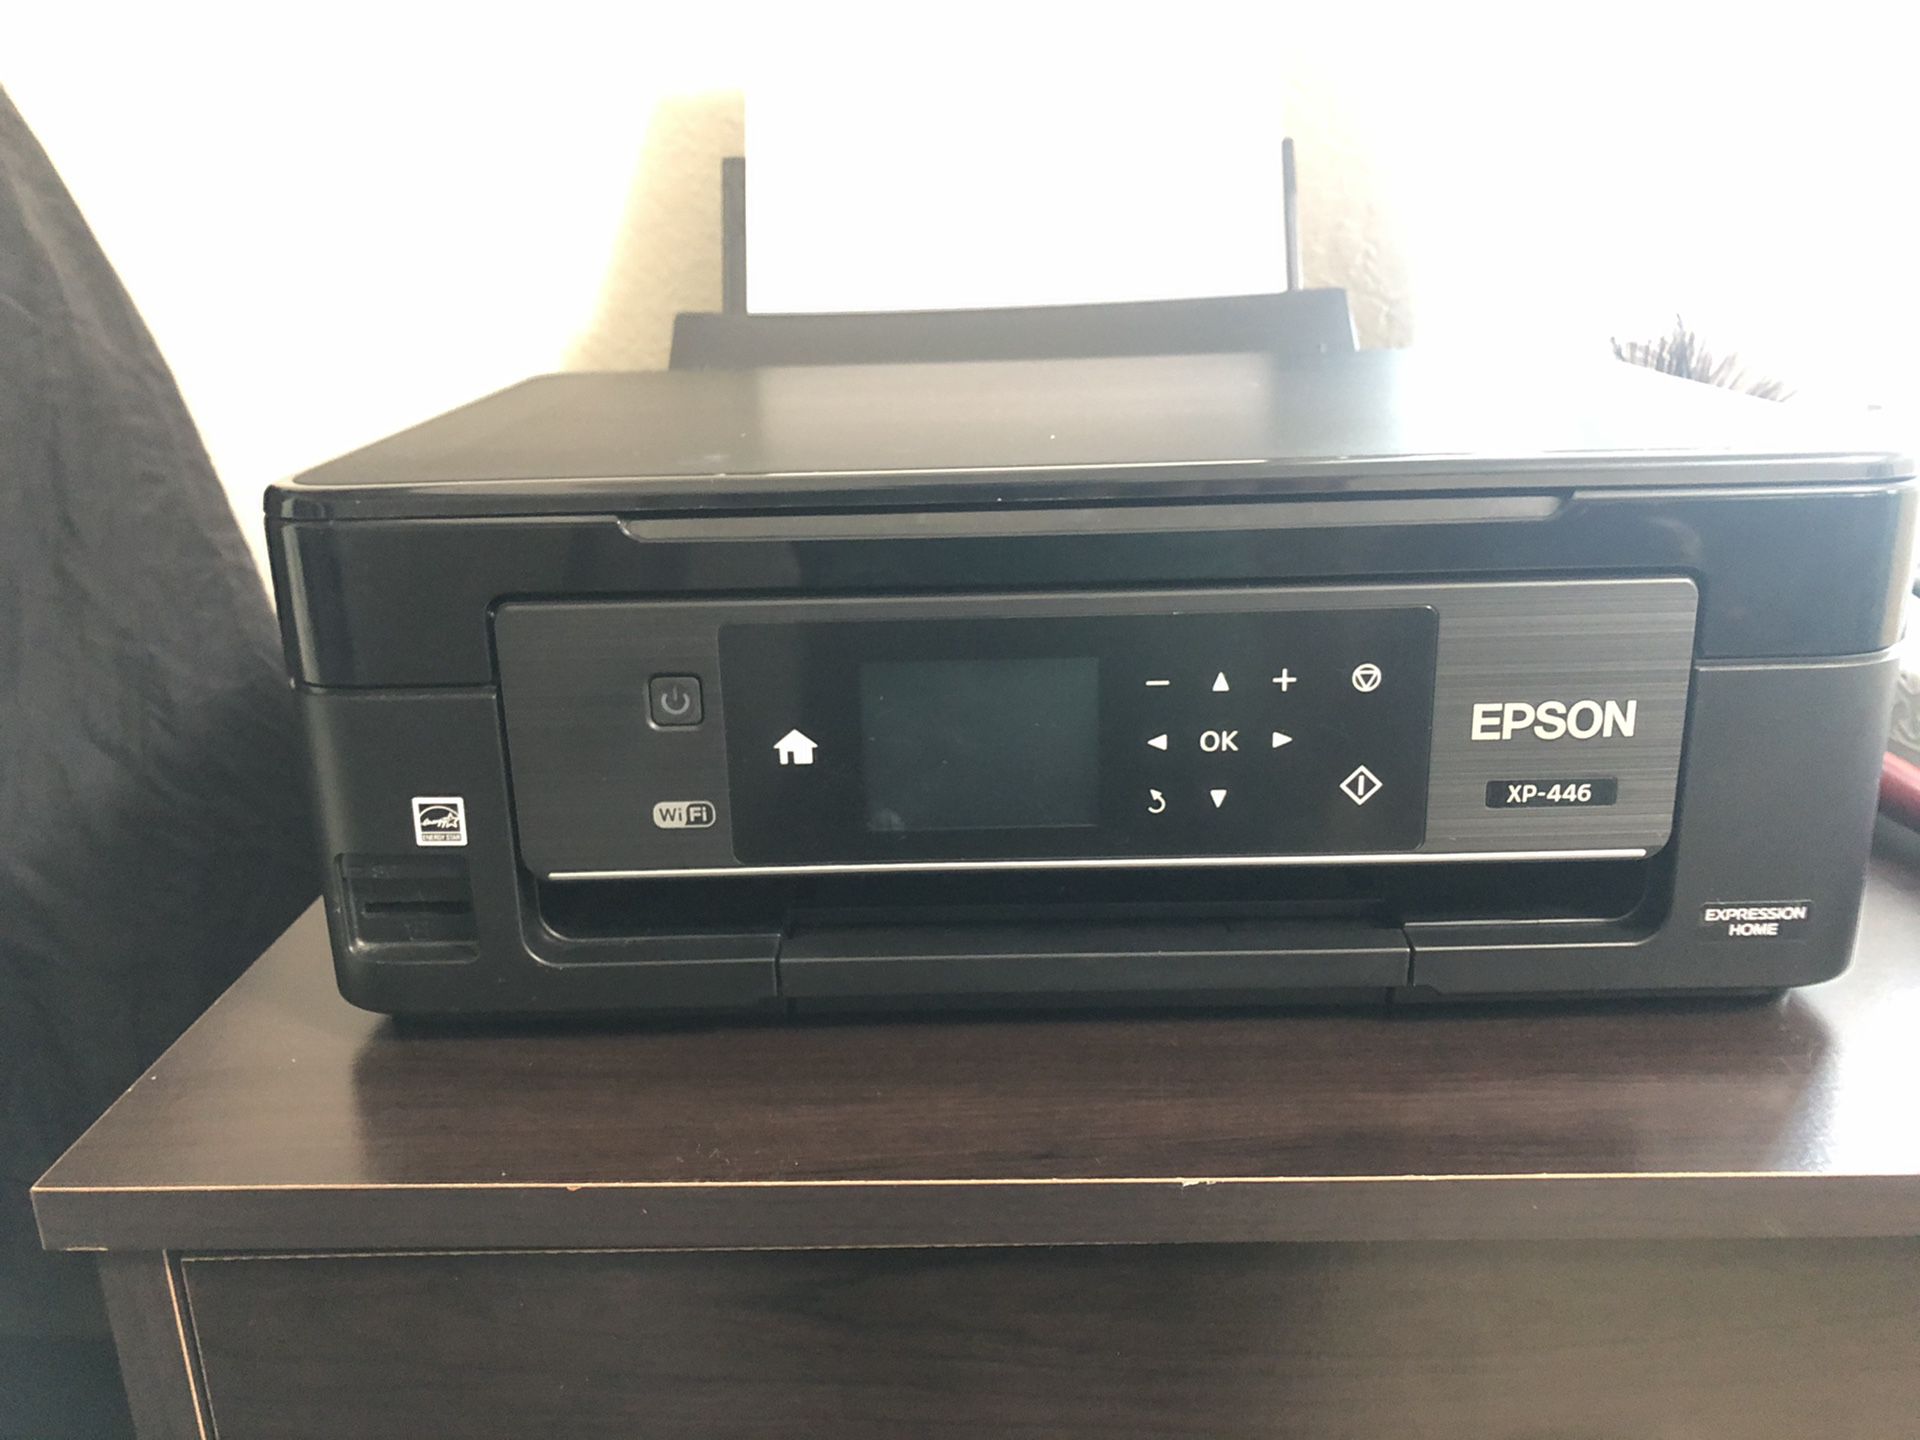 Epson xp-446 printer